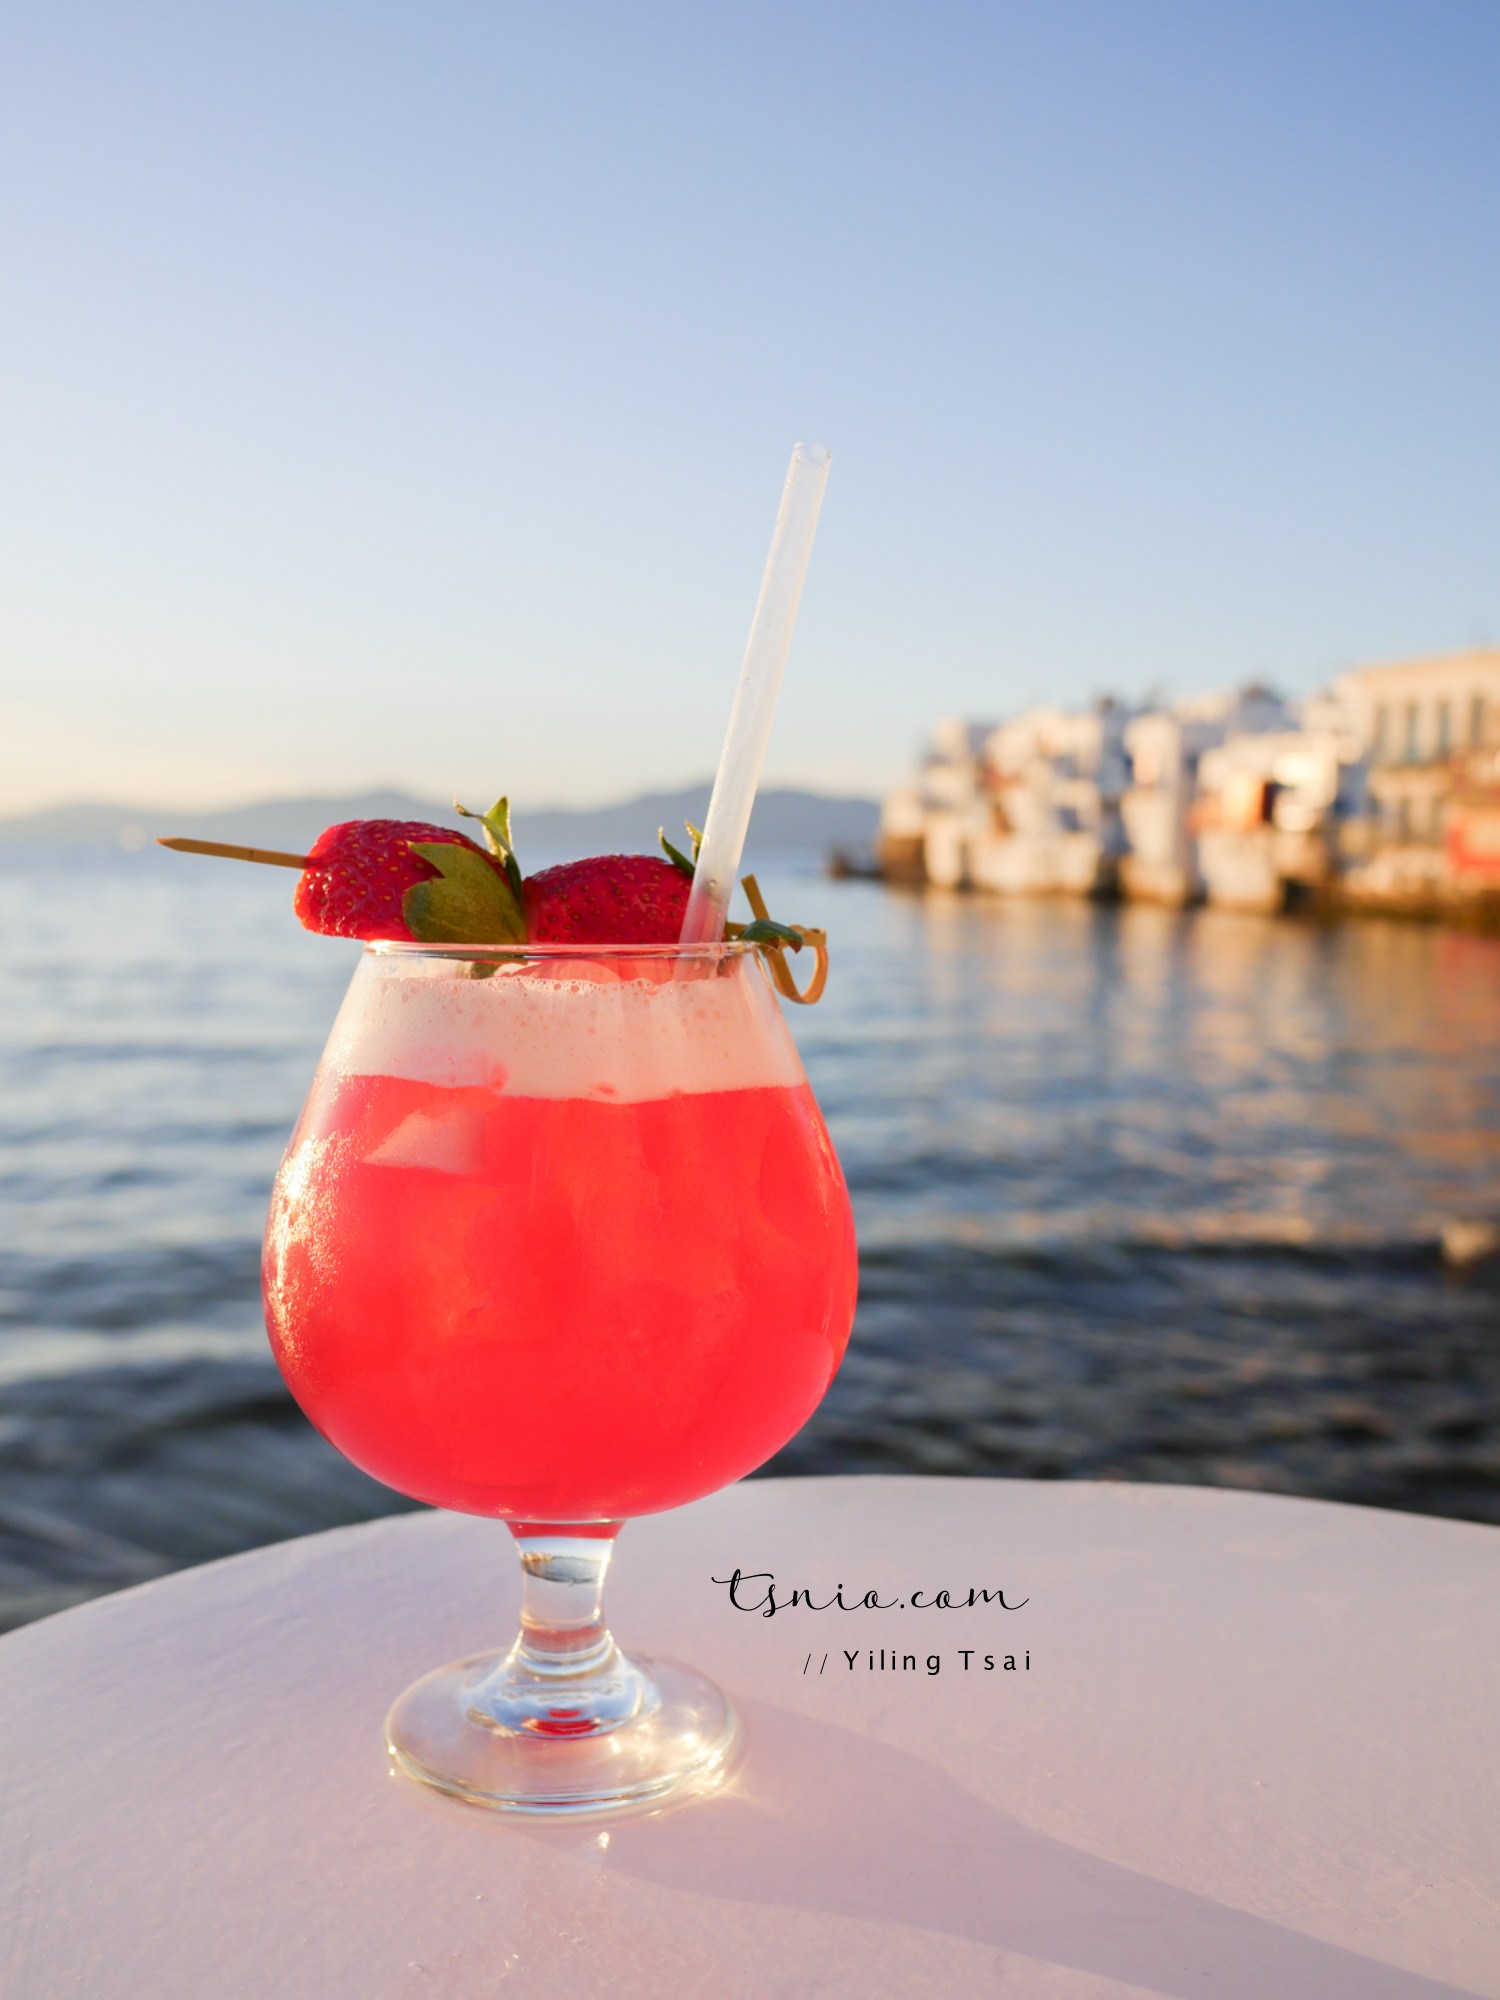 希臘米克諾斯酒吧 Caprice Bar 享有米克諾斯夕陽超棒視野